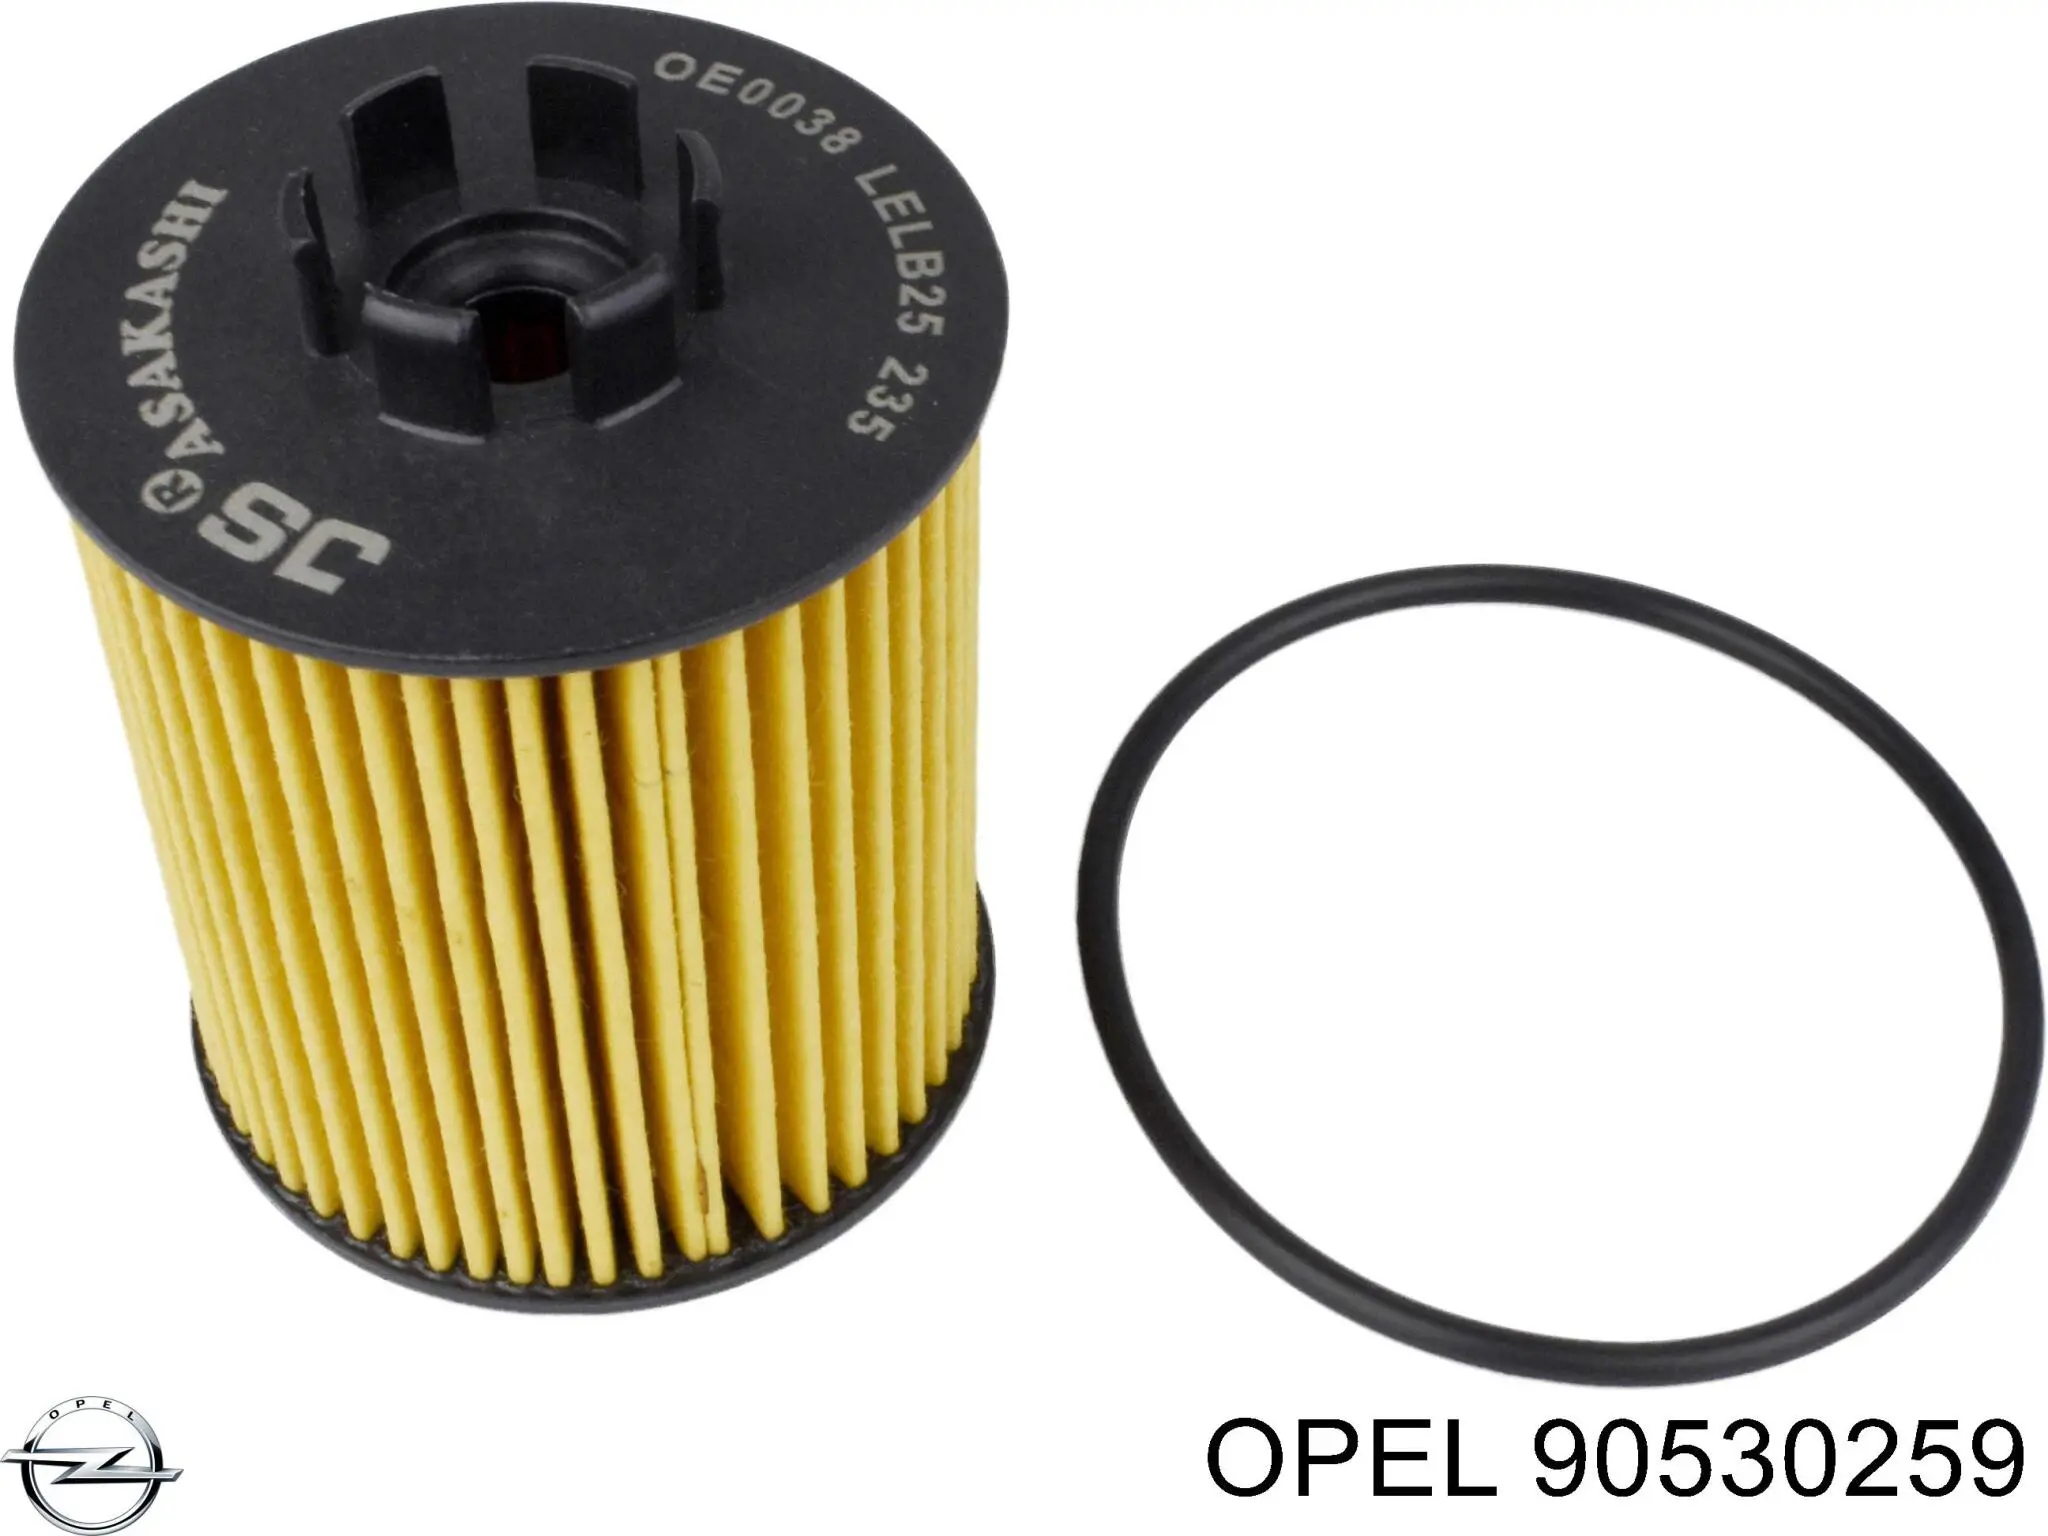 90530259 Opel filtro de aceite